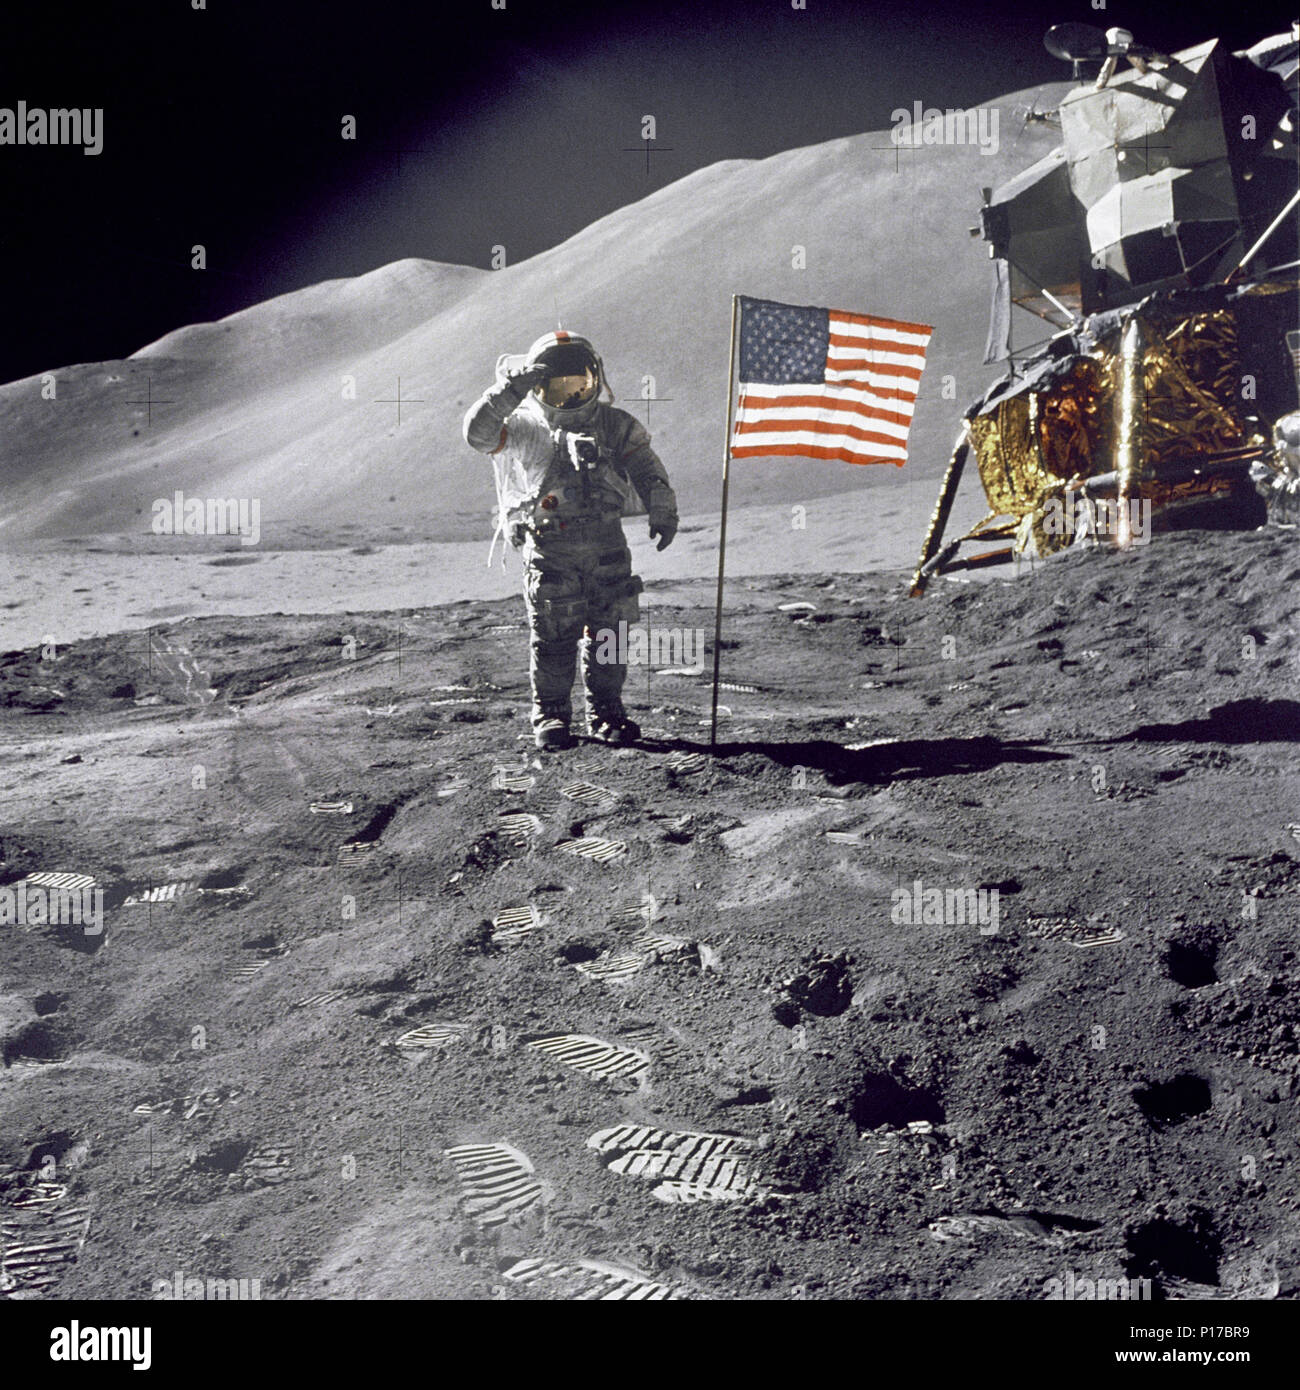 Astronaut David R. Scott, Commander, gibt einen militärischen Gruß im Stehen neben den eingesetzten US-Flagge während der Apollo 15 Lunar Surface Extra Vehicular Activity (EVA) der Hadley-Apennine Landeplatz. Die Flagge wurde gegen Ende von EVA-2 eingesetzt. Die Landefähre "Falcon" ist teilweise sichtbar auf der rechten Seite. Hadley Delta im Hintergrund erhebt sich etwa 4000 Meter (ca. 13,124 Fuß) über die Ebene. Stockfoto